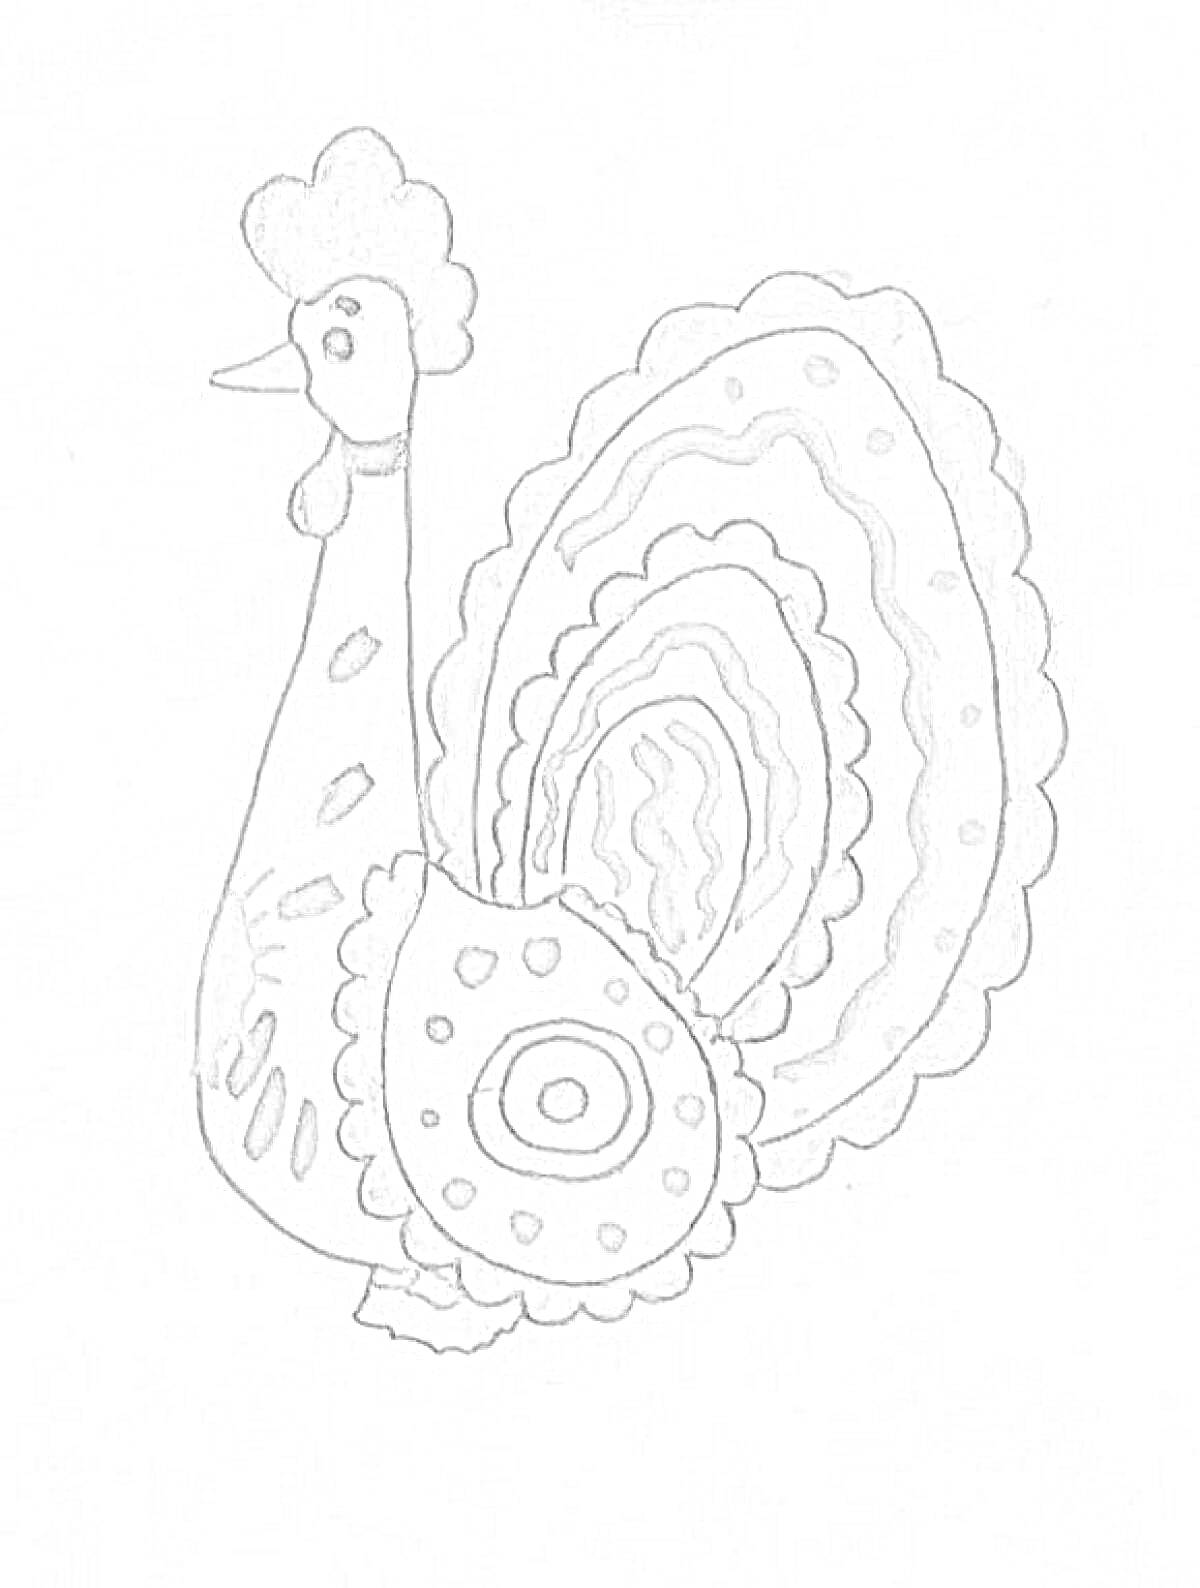 Раскраска дымковская игрушка петушок с завитками и кружочками на крыльях и хвосте